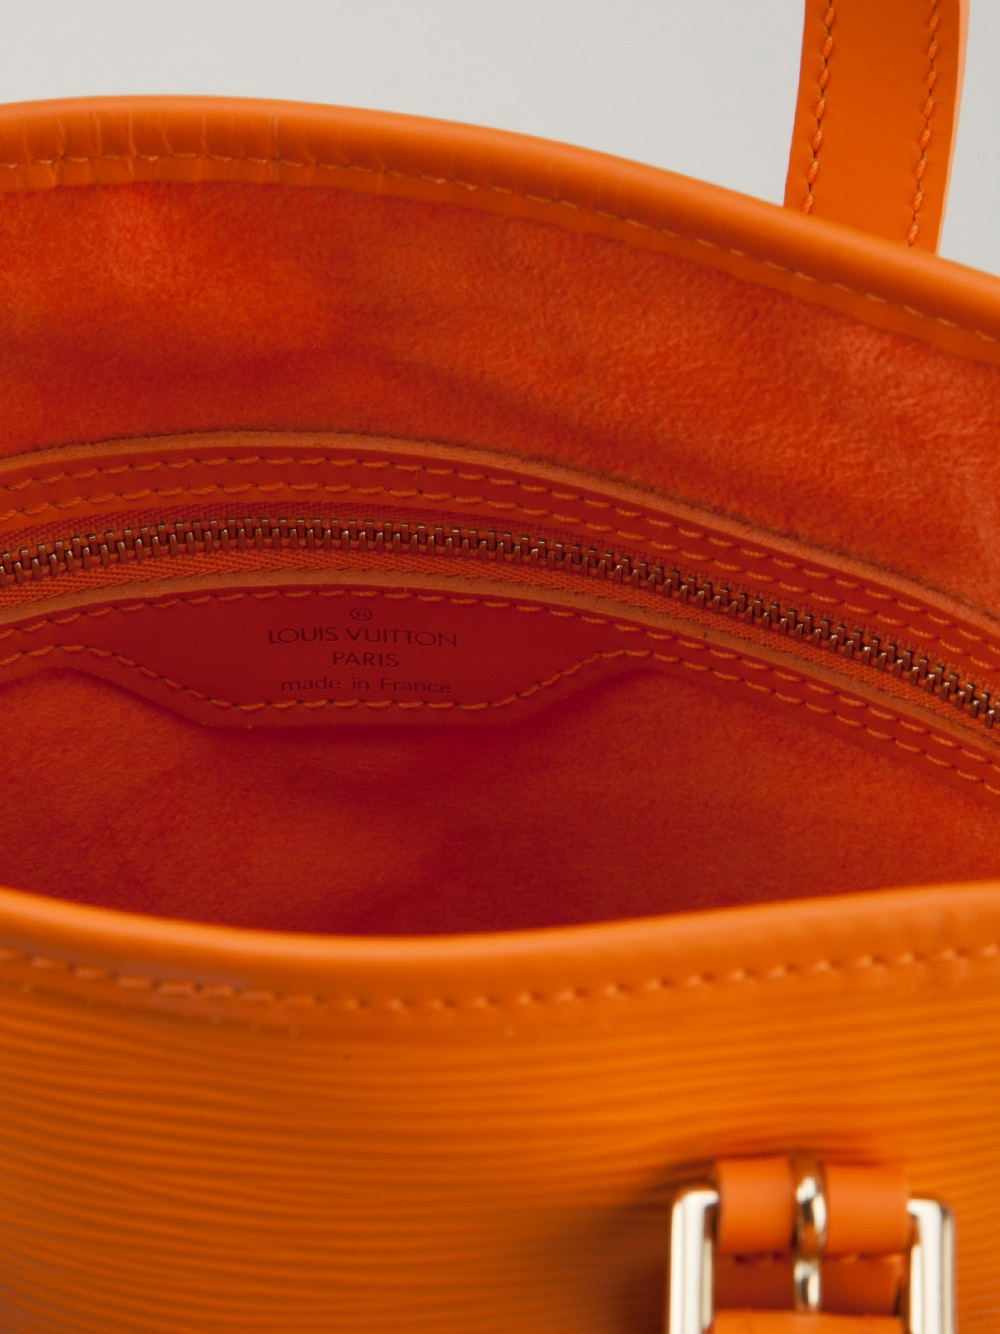 orange louis vuitton handbag